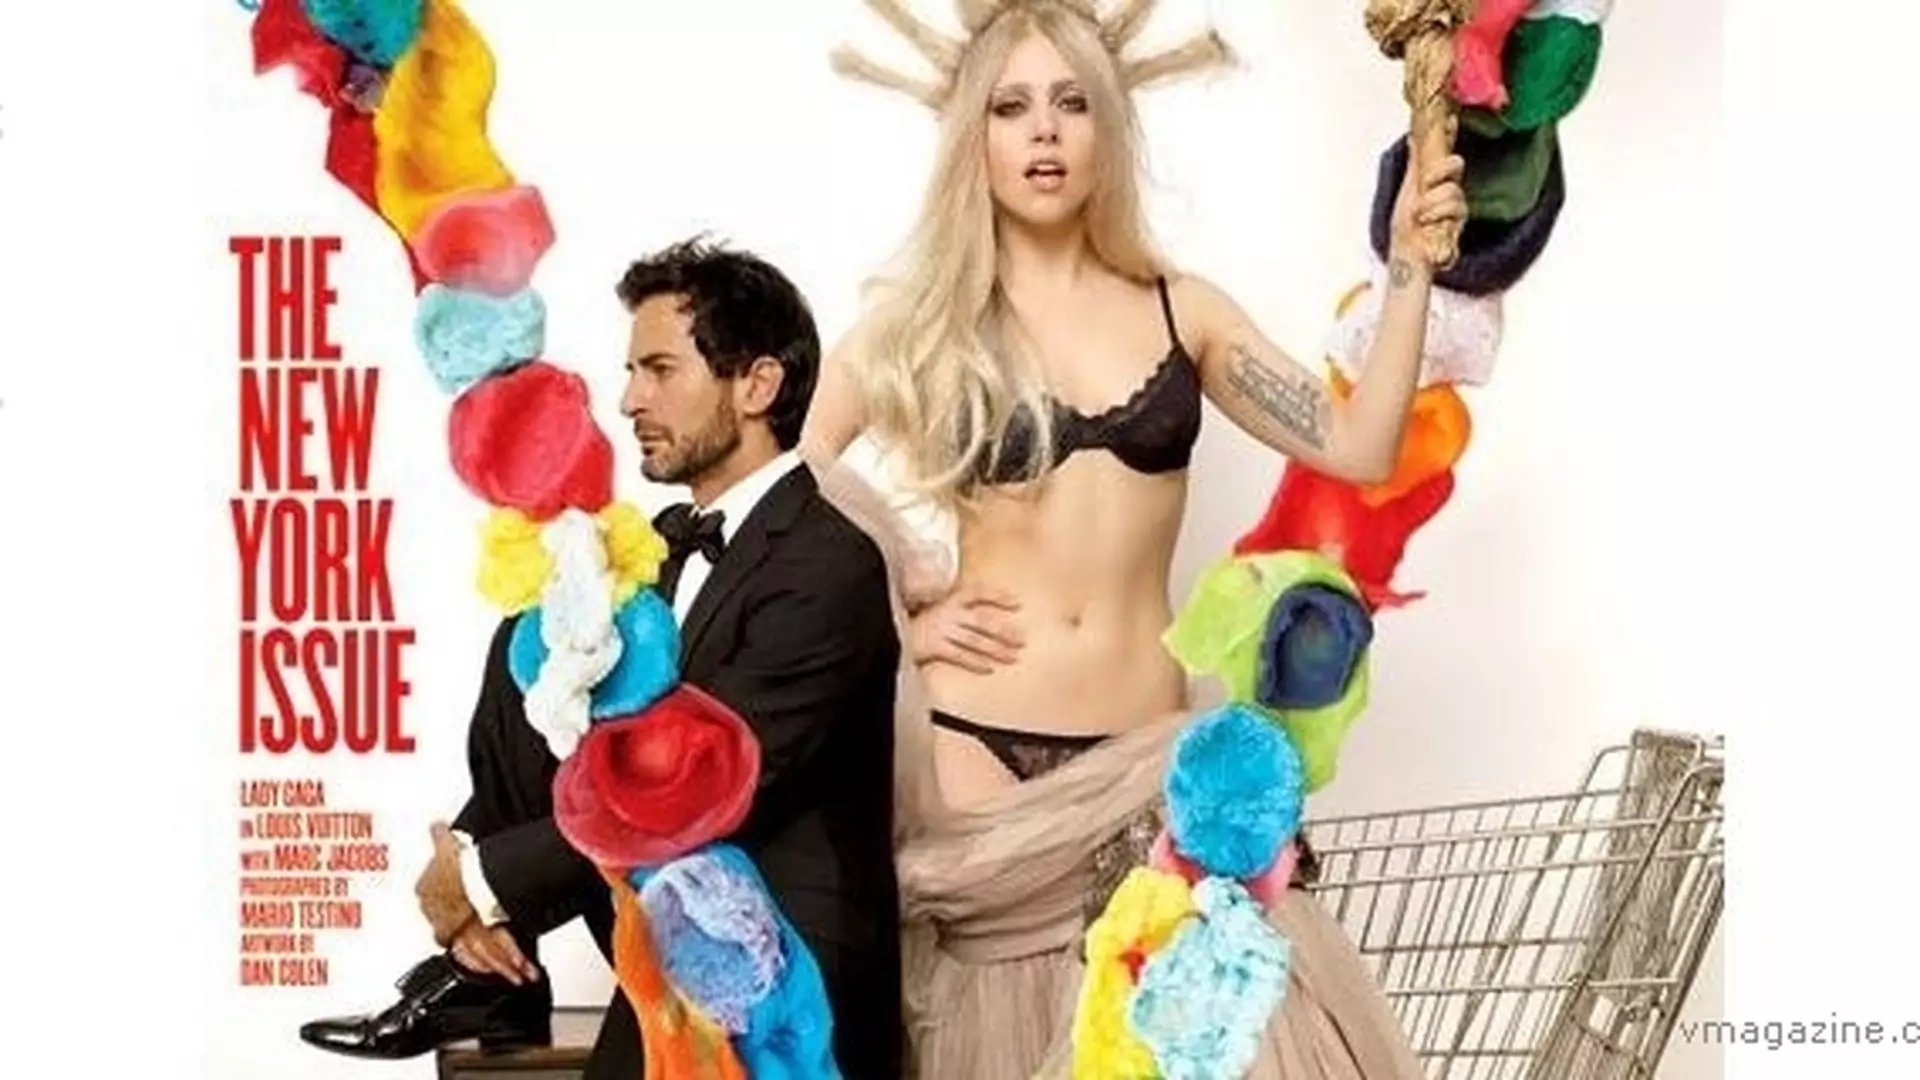 Lady Gaga jako Statua Wolności na okładce "V Magazine"